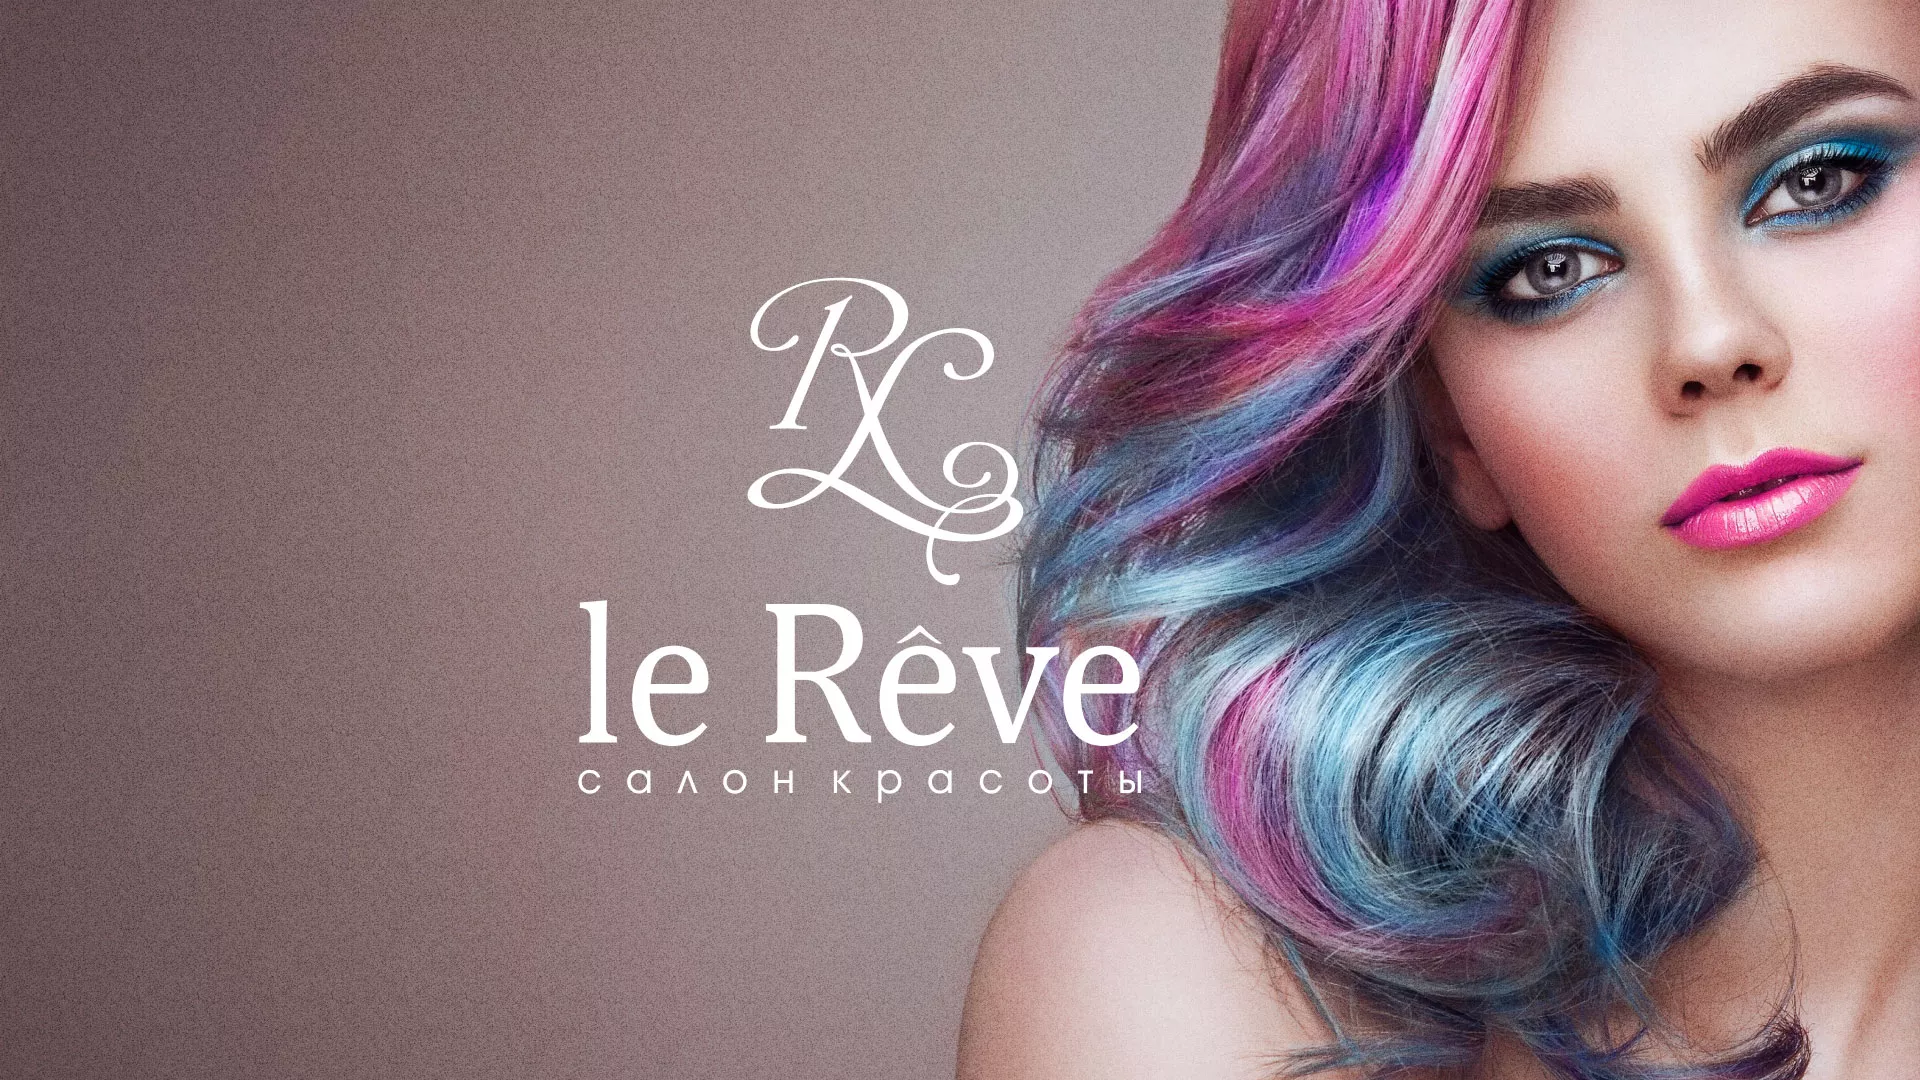 Создание сайта для салона красоты «Le Reve» в Орехово-Зуево